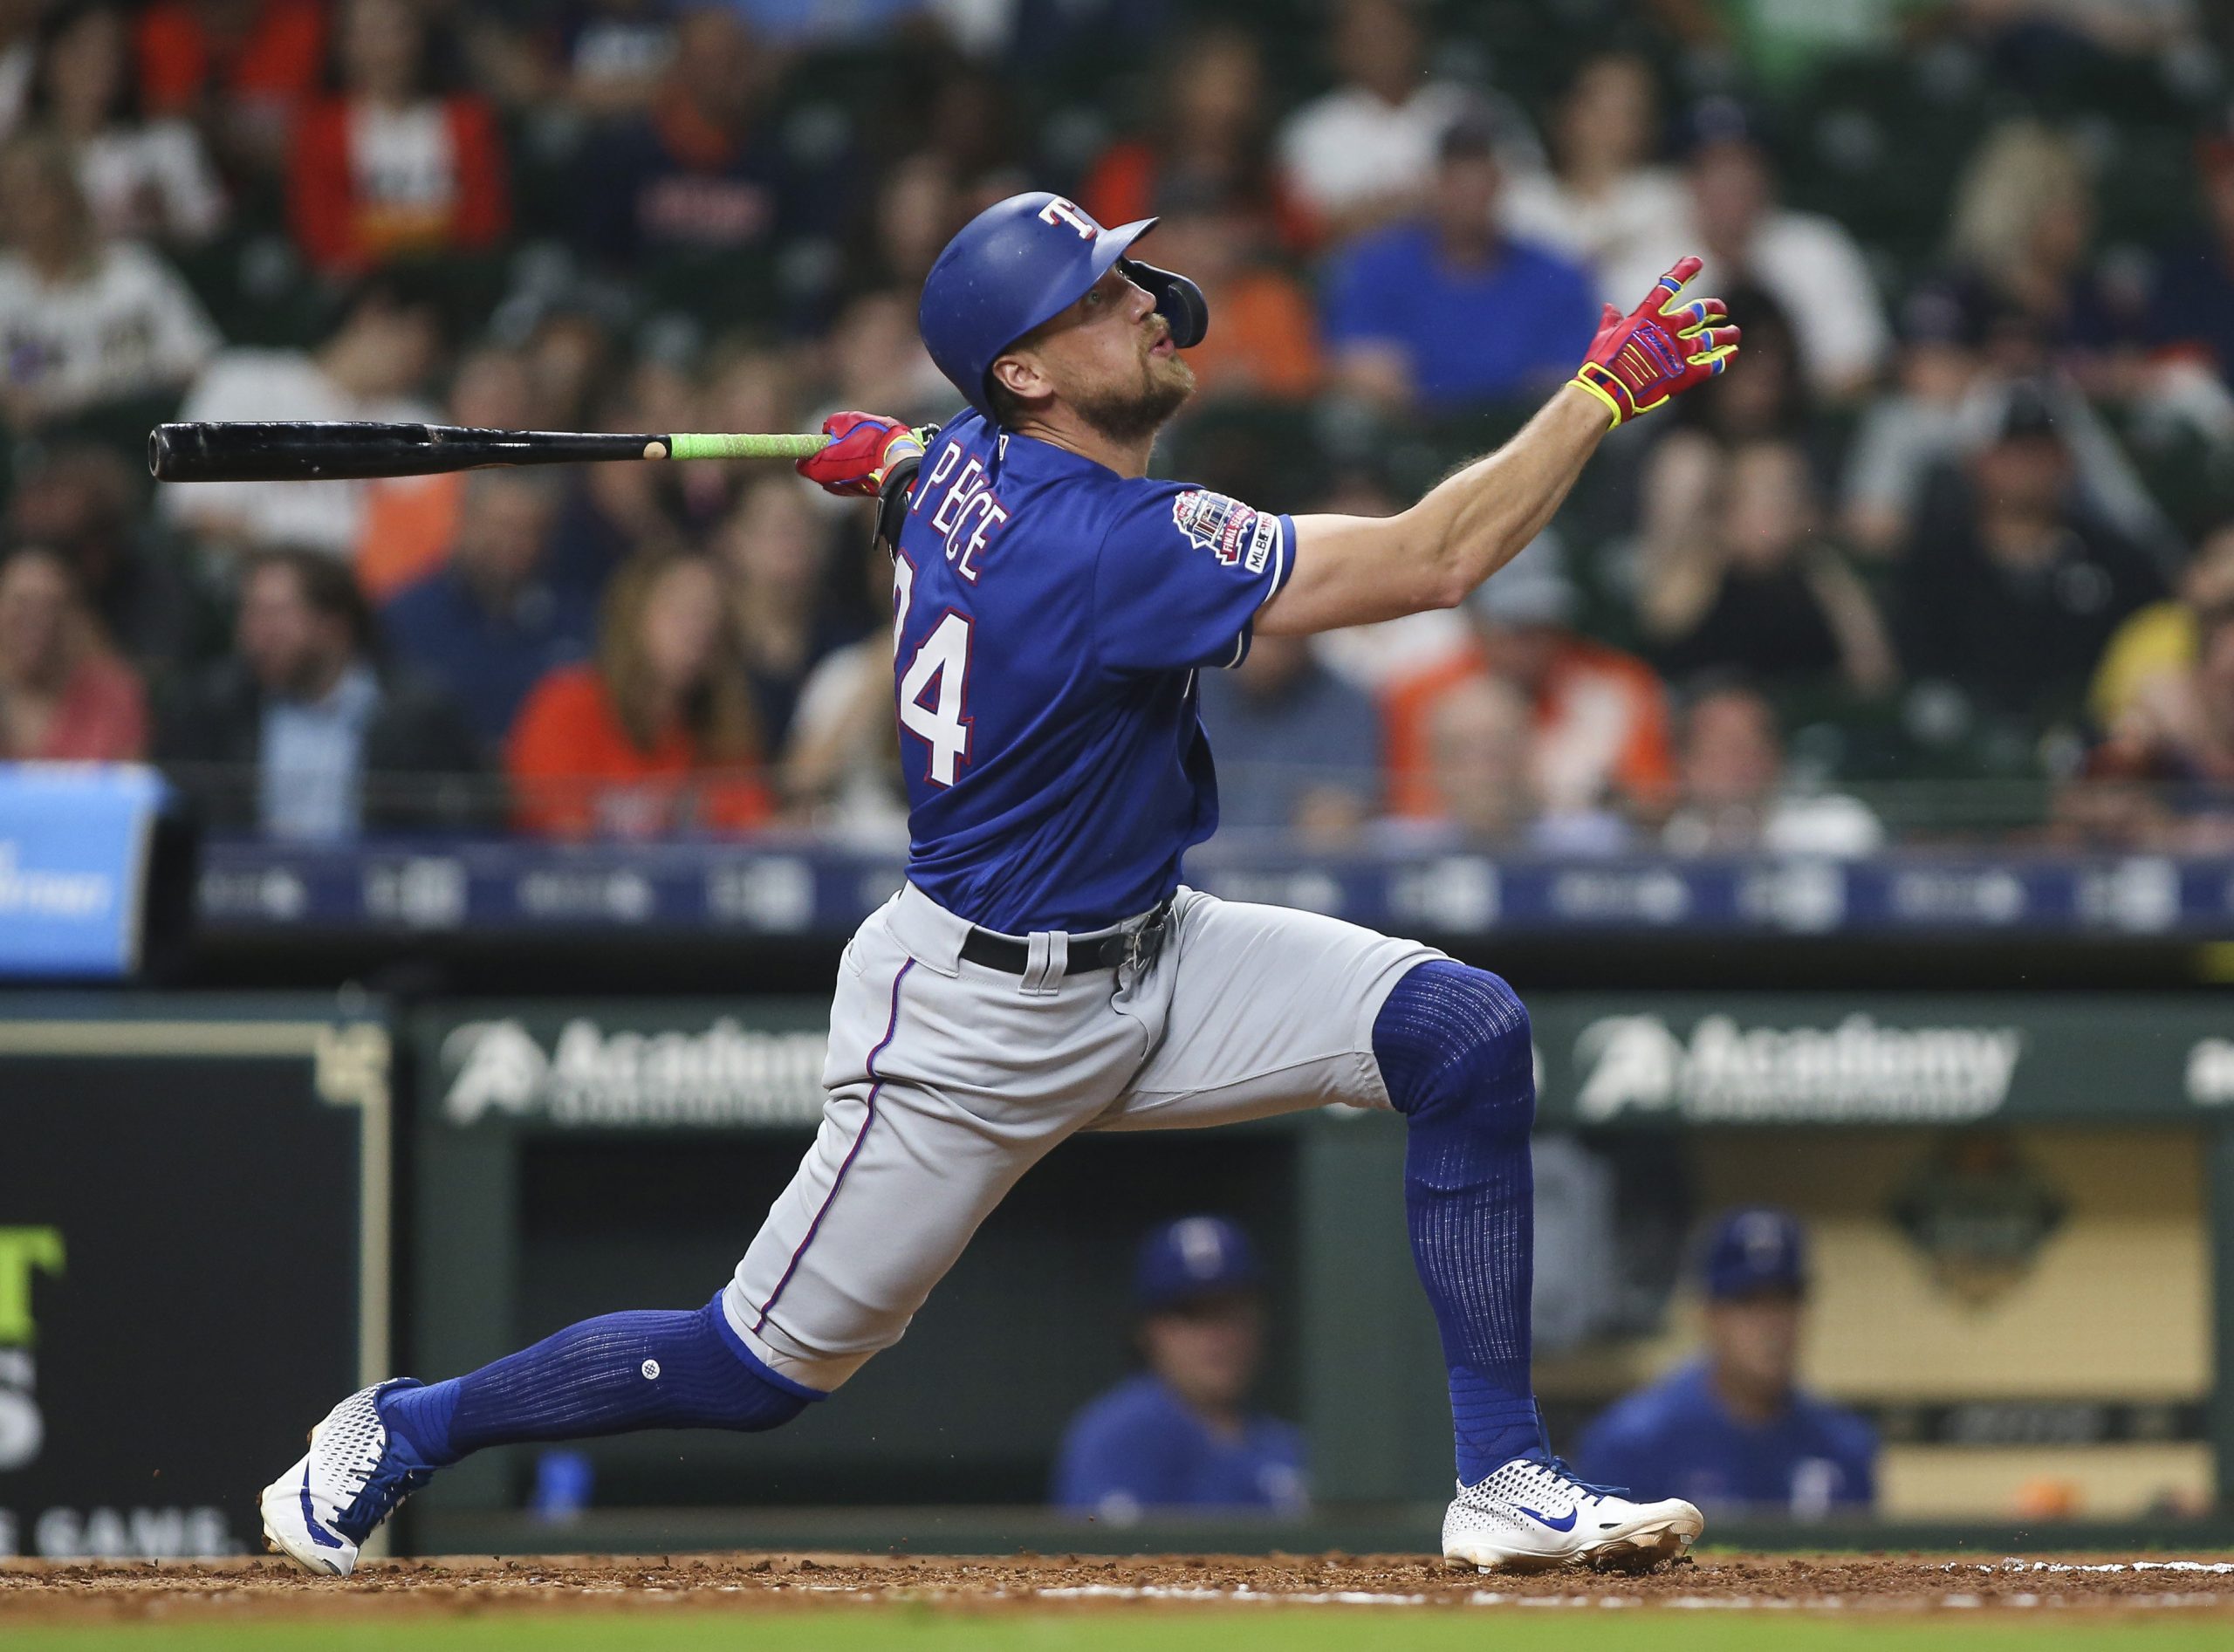 MLB: Texas Rangers at Houston Astros